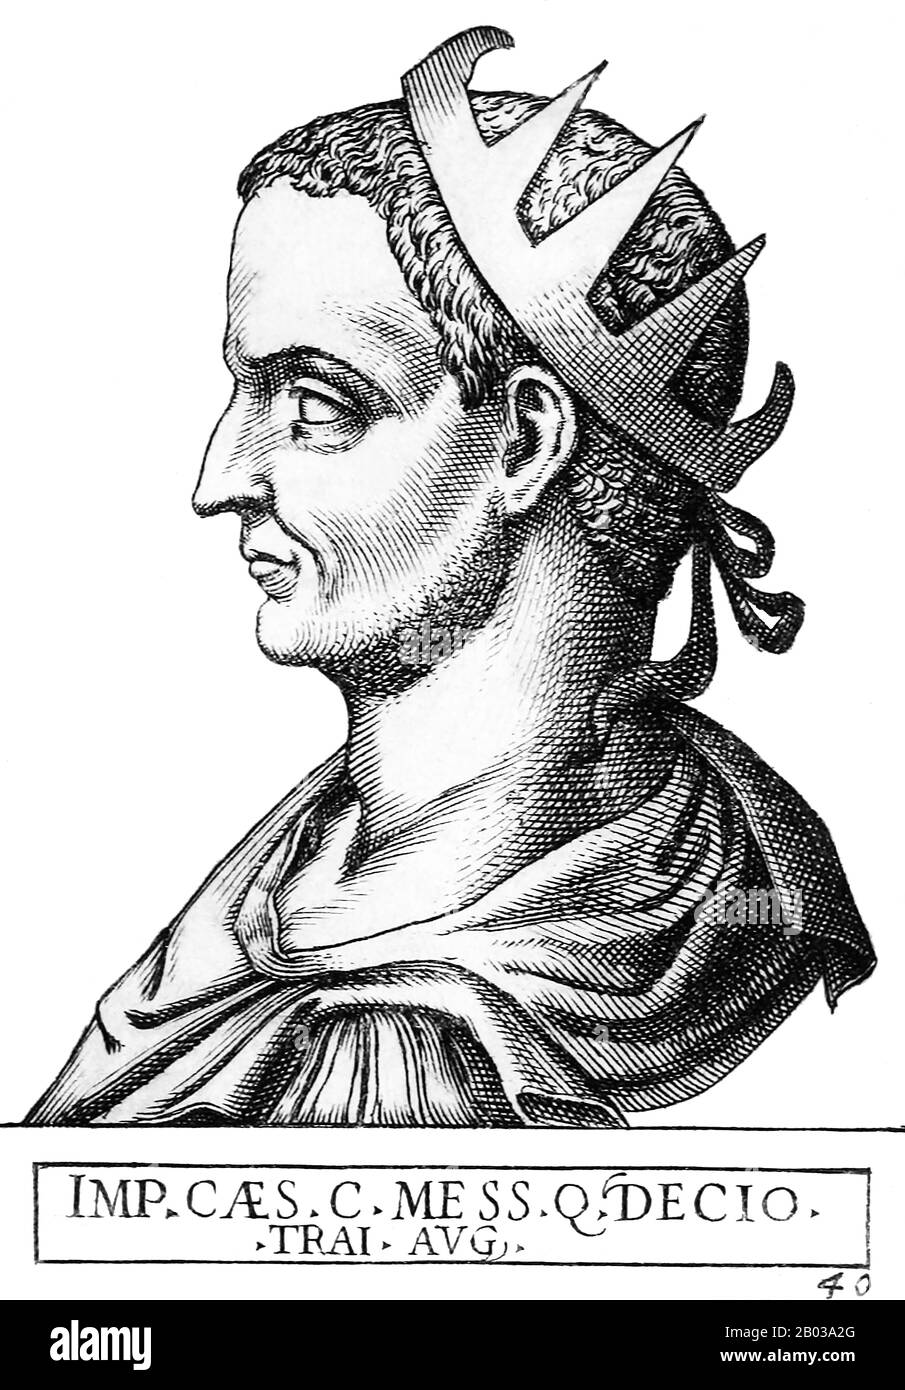 Trajan Decius (201-251) war ein angesehener Senator und Gouverneur im römischen Reich. Als in den letzten Jahren der arabischen Herrschaft Philipp im ganzen Reich Revolten und Aufstände aufkamen, wurde Decius geschickt, um eine Revolte in den Balkanprovinzen Moesia und Pannonia zu bezwingen. Nach dem Sieg über die Revolte wurde Decius von seinen Truppen zum Kaiser ausgerufen, und er kämpfte 249 gegen Philipp und tötete ihn, zog nach Rom ein und wurde vom römischen Senat als Kaiser anerkannt. Als Kaiser konzentrierte sich Decius darauf, die äußeren Bedrohungen für das Reich zu besiegen sowie die öffentliche Frömmigkeit wiederherzustellen und den Stat zu stärken Stockfoto